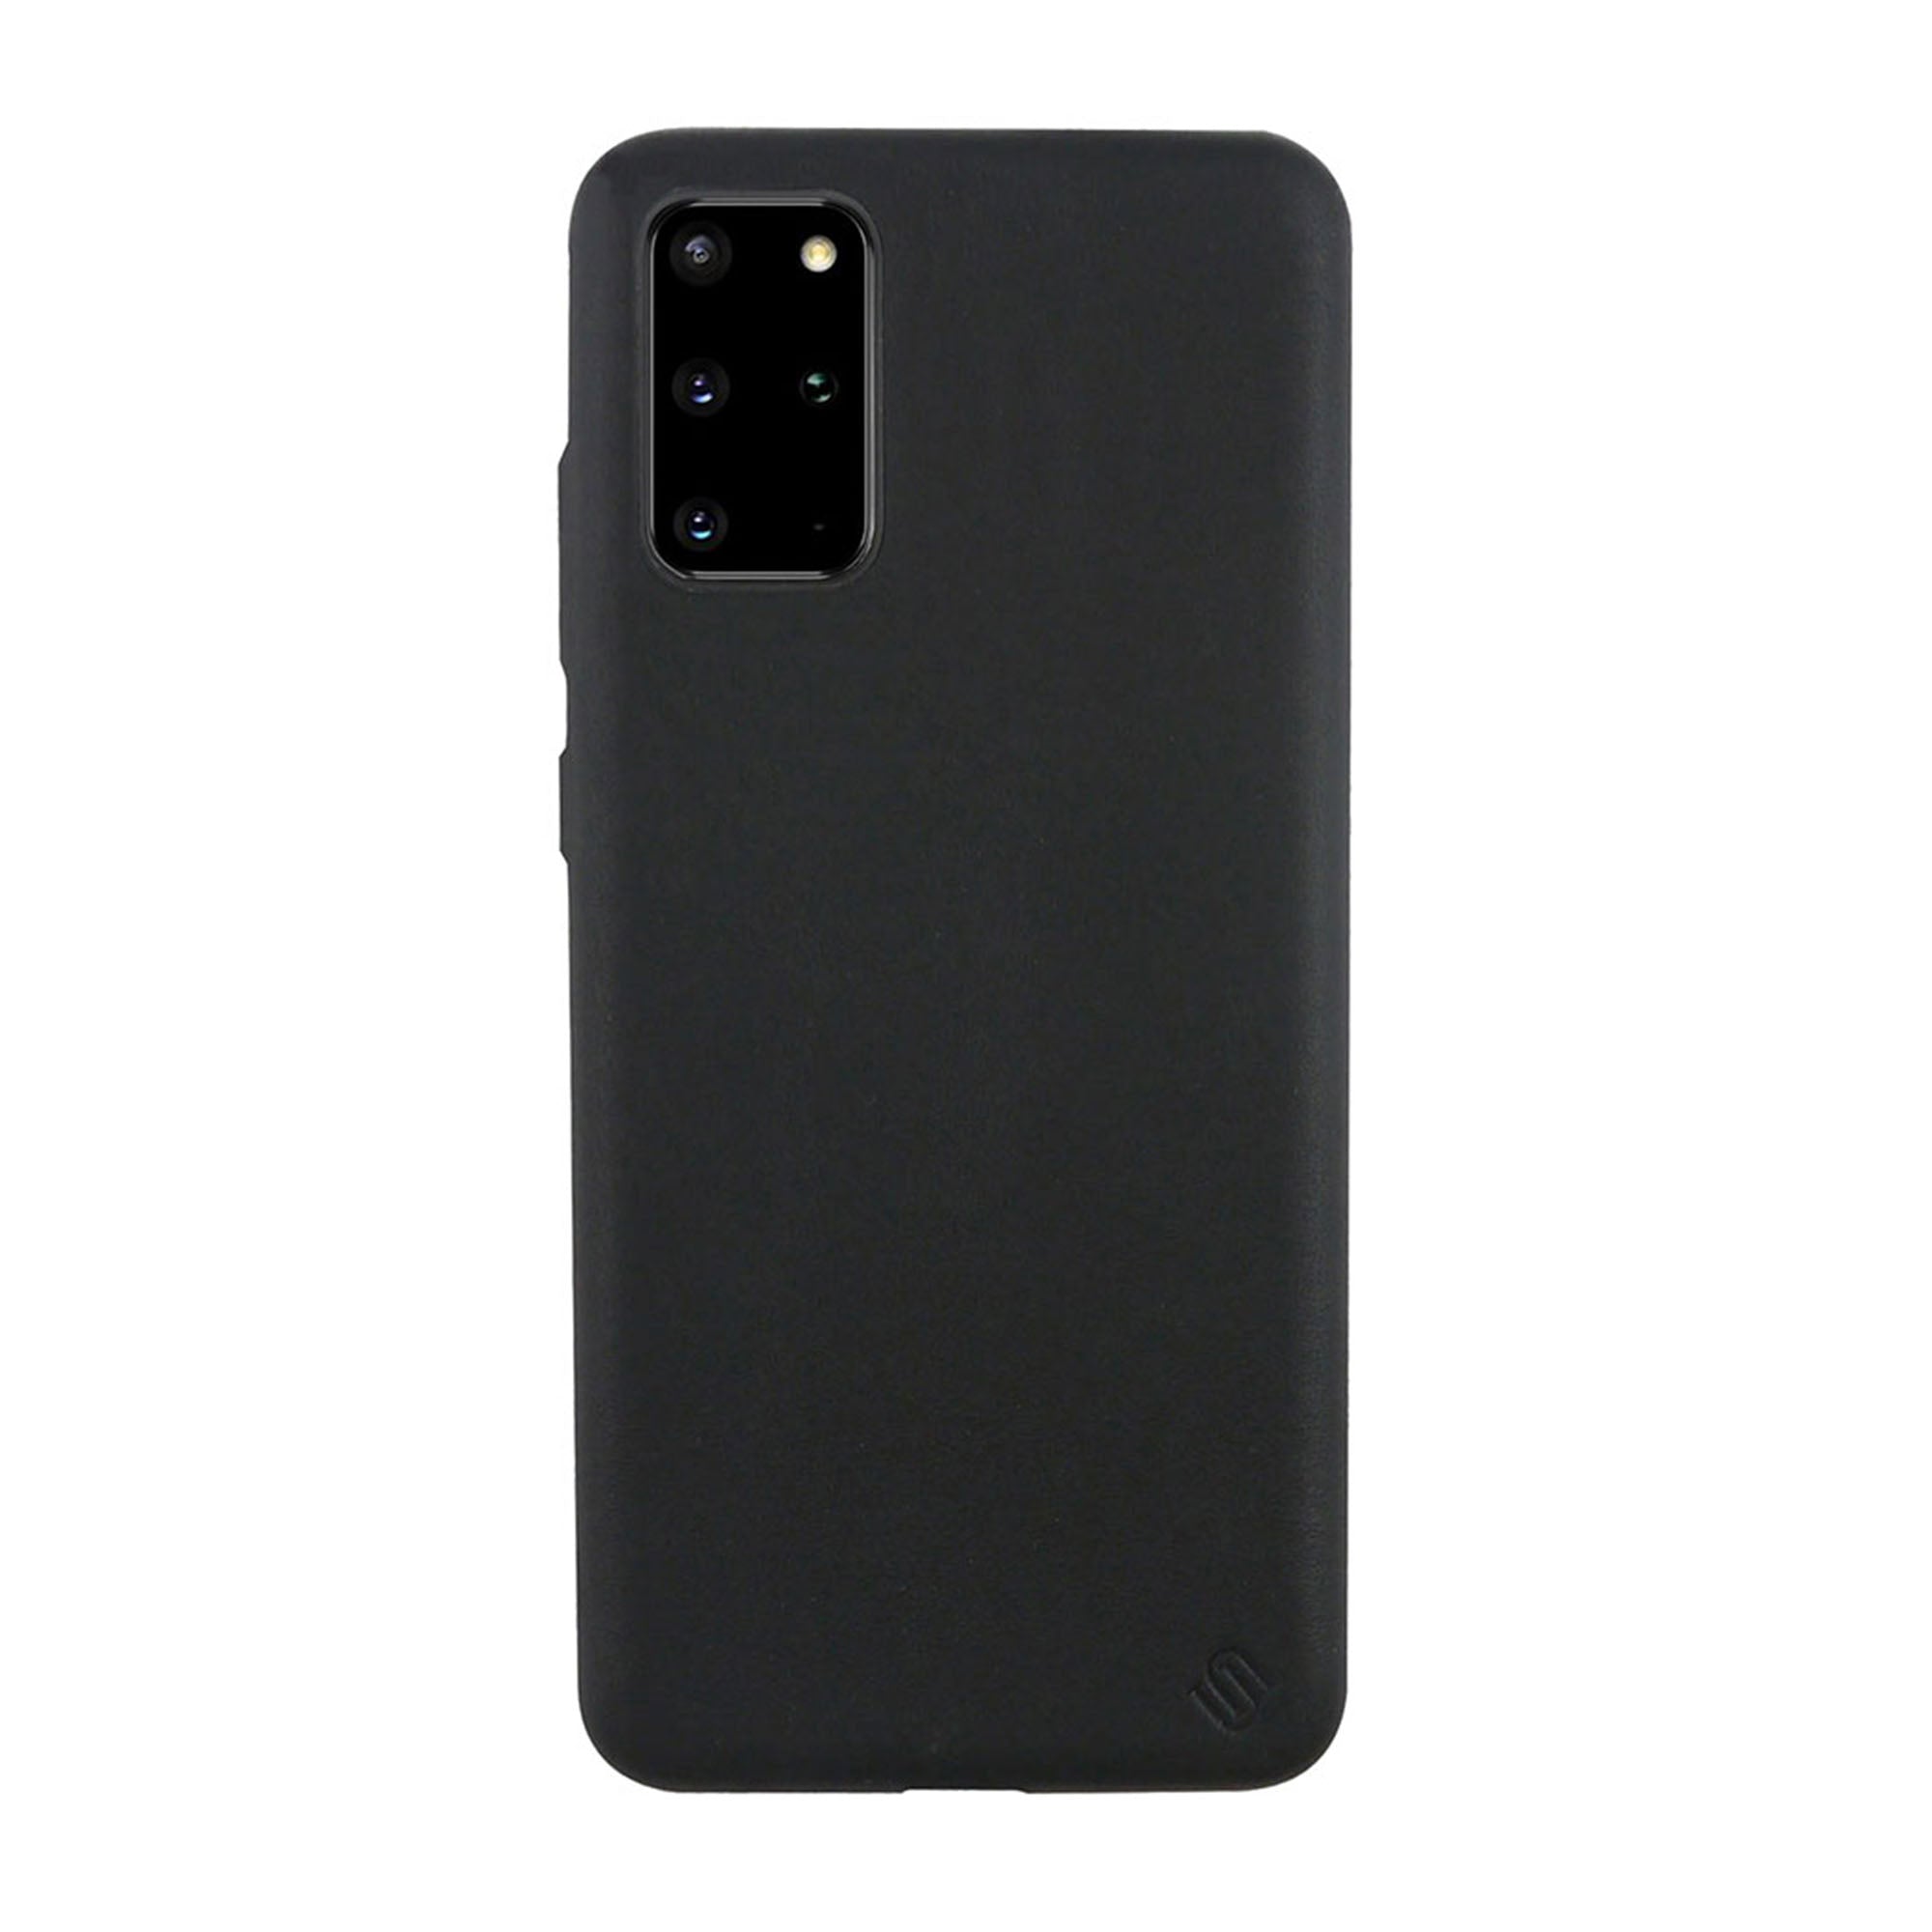 Samsung Galaxy S20+ 5G Uunique Black (Black Olive) Nutrisiti Eco Back Case - 15-06637